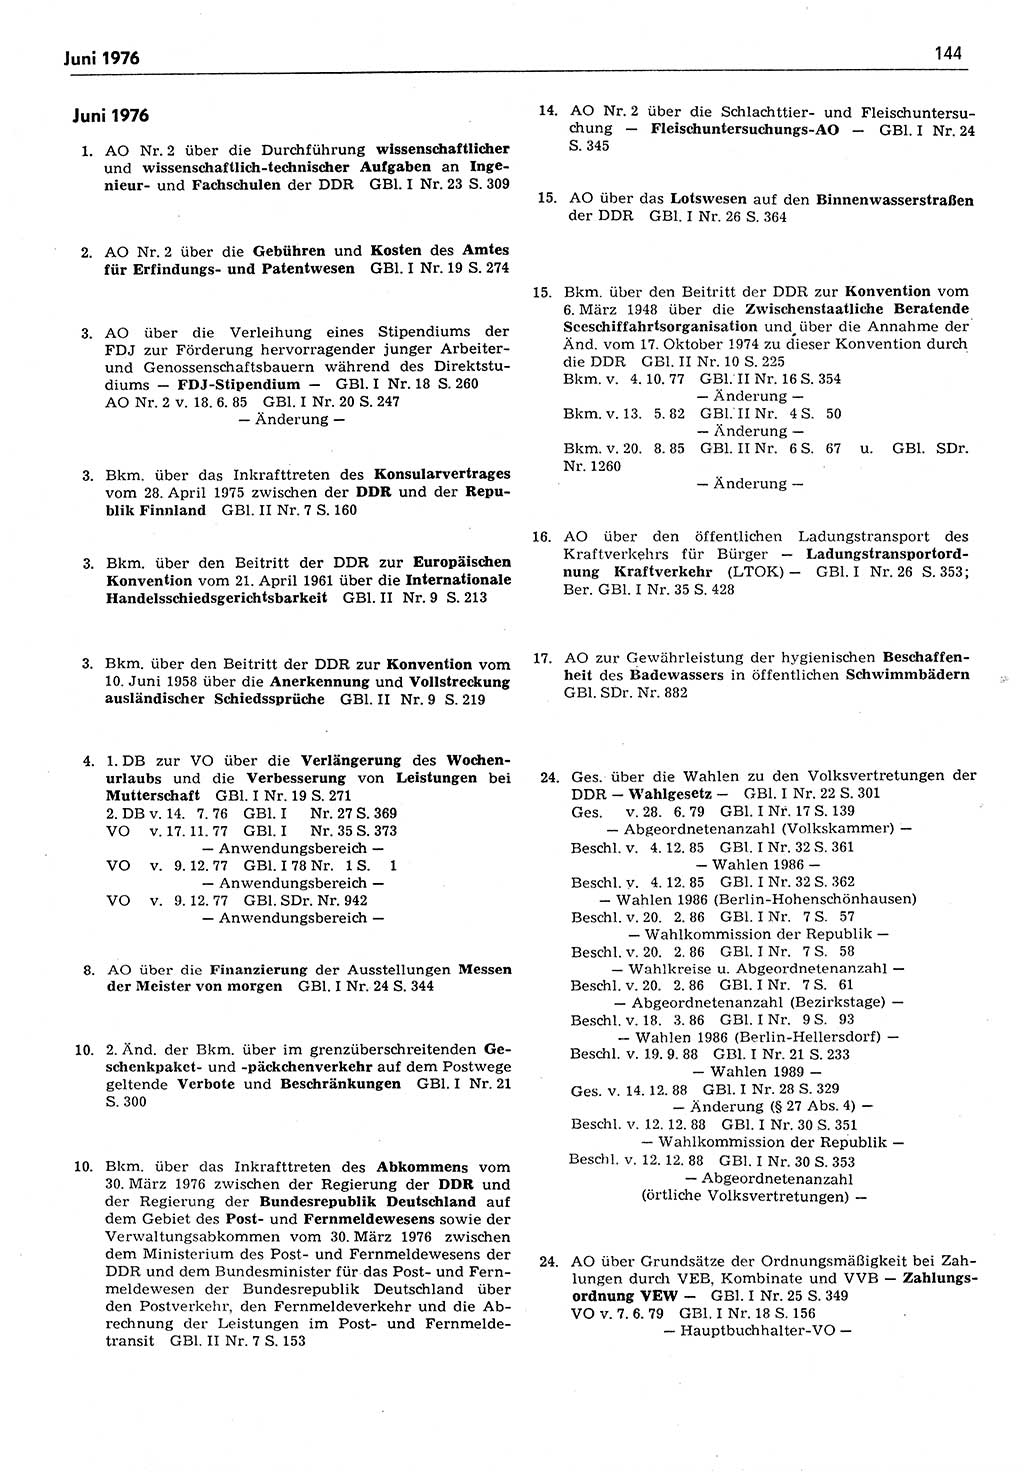 Das geltende Recht der Deutschen Demokratischen Republik (DDR) 1949-1988, Seite 144 (Gelt. R. DDR 1949-1988, S. 144)